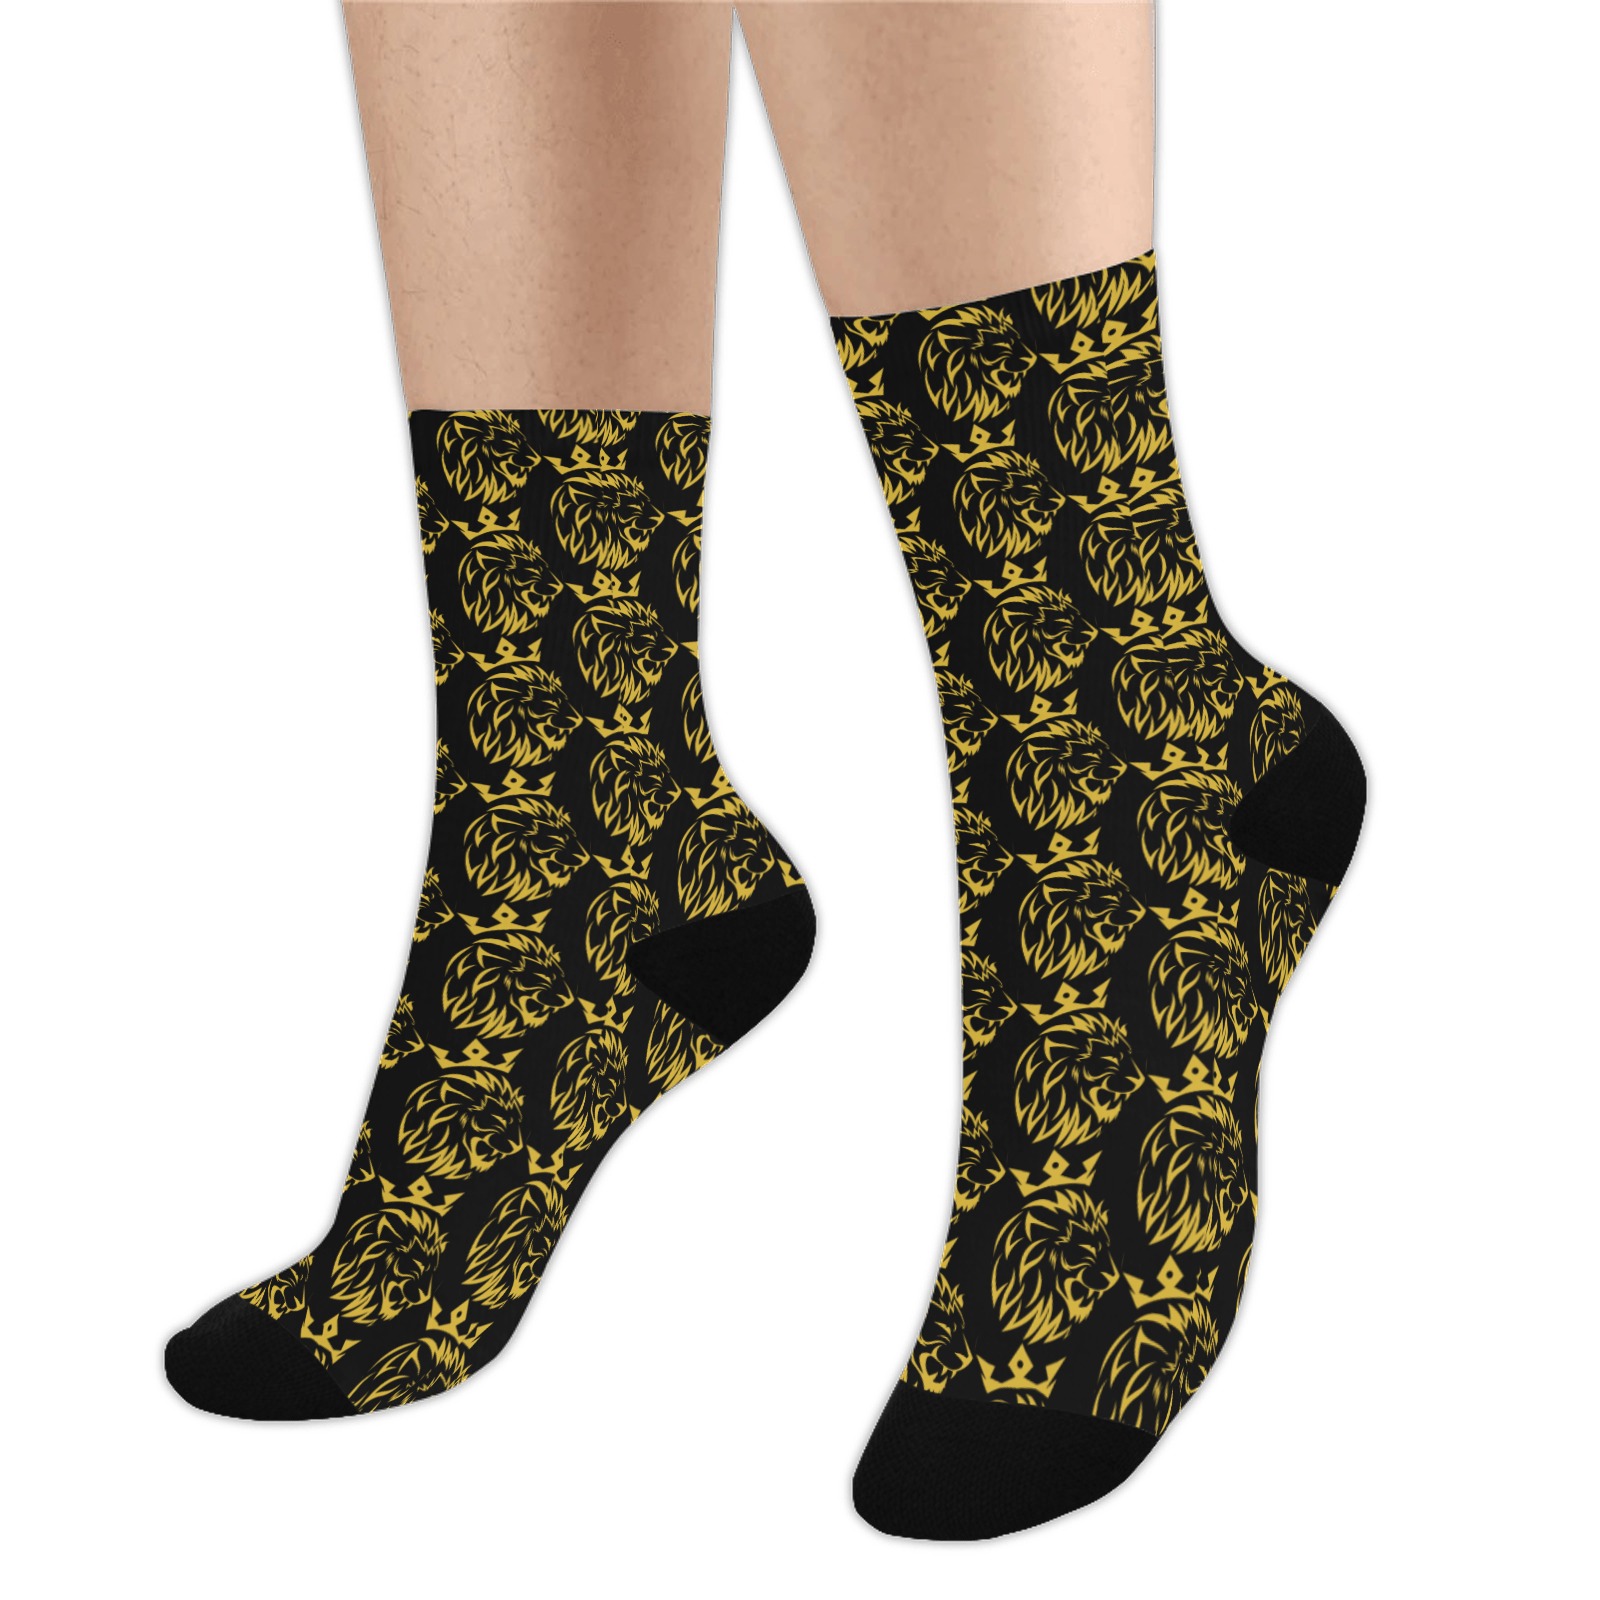 Freeman Empire socks Trouser Socks (For Men)